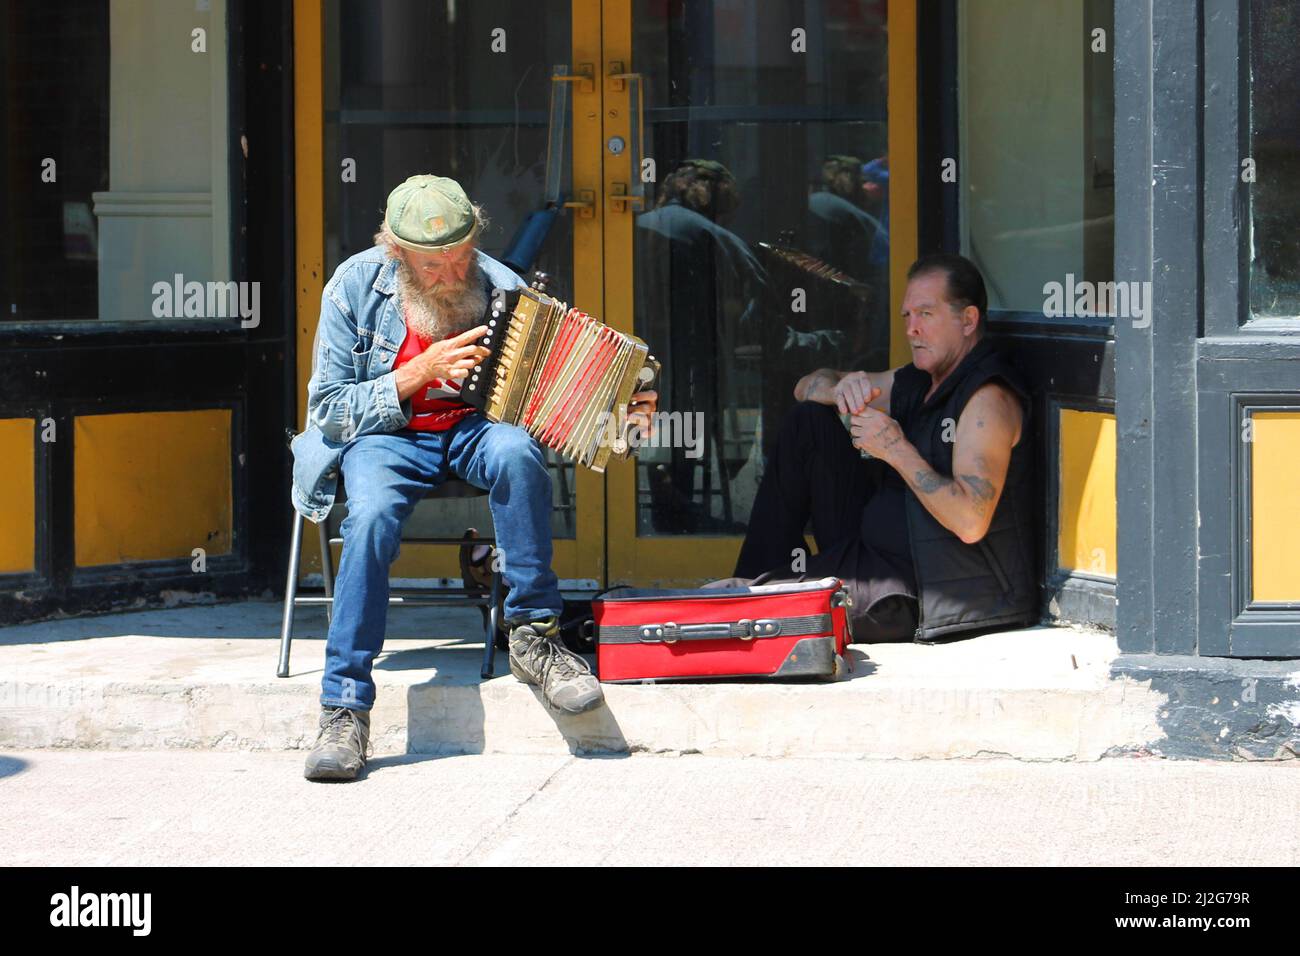 Ein Straßenmusiker, der ein Akkordeon in einer Tür spielt, ein Straßenmensch sitzt ebenfalls in der Tür, Water Street, St. John's, NL Stockfoto